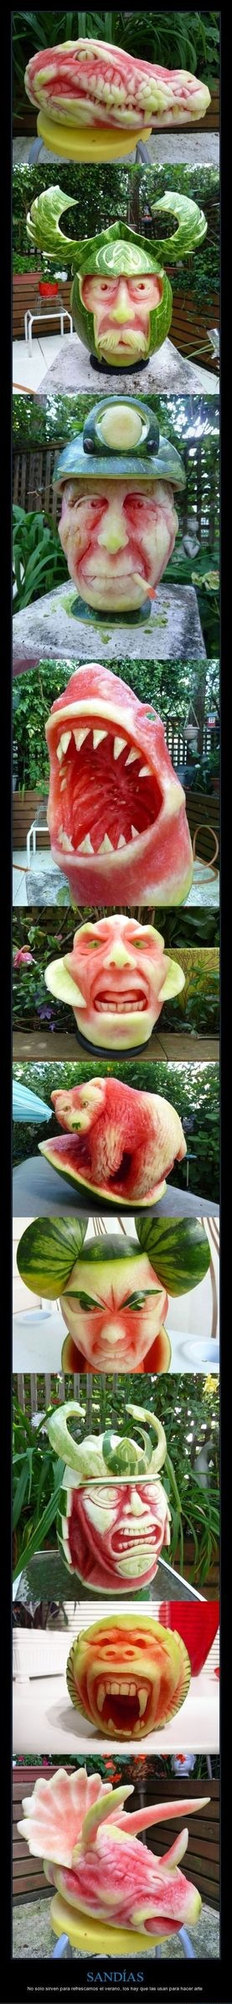 Esculturas de melancia - meme